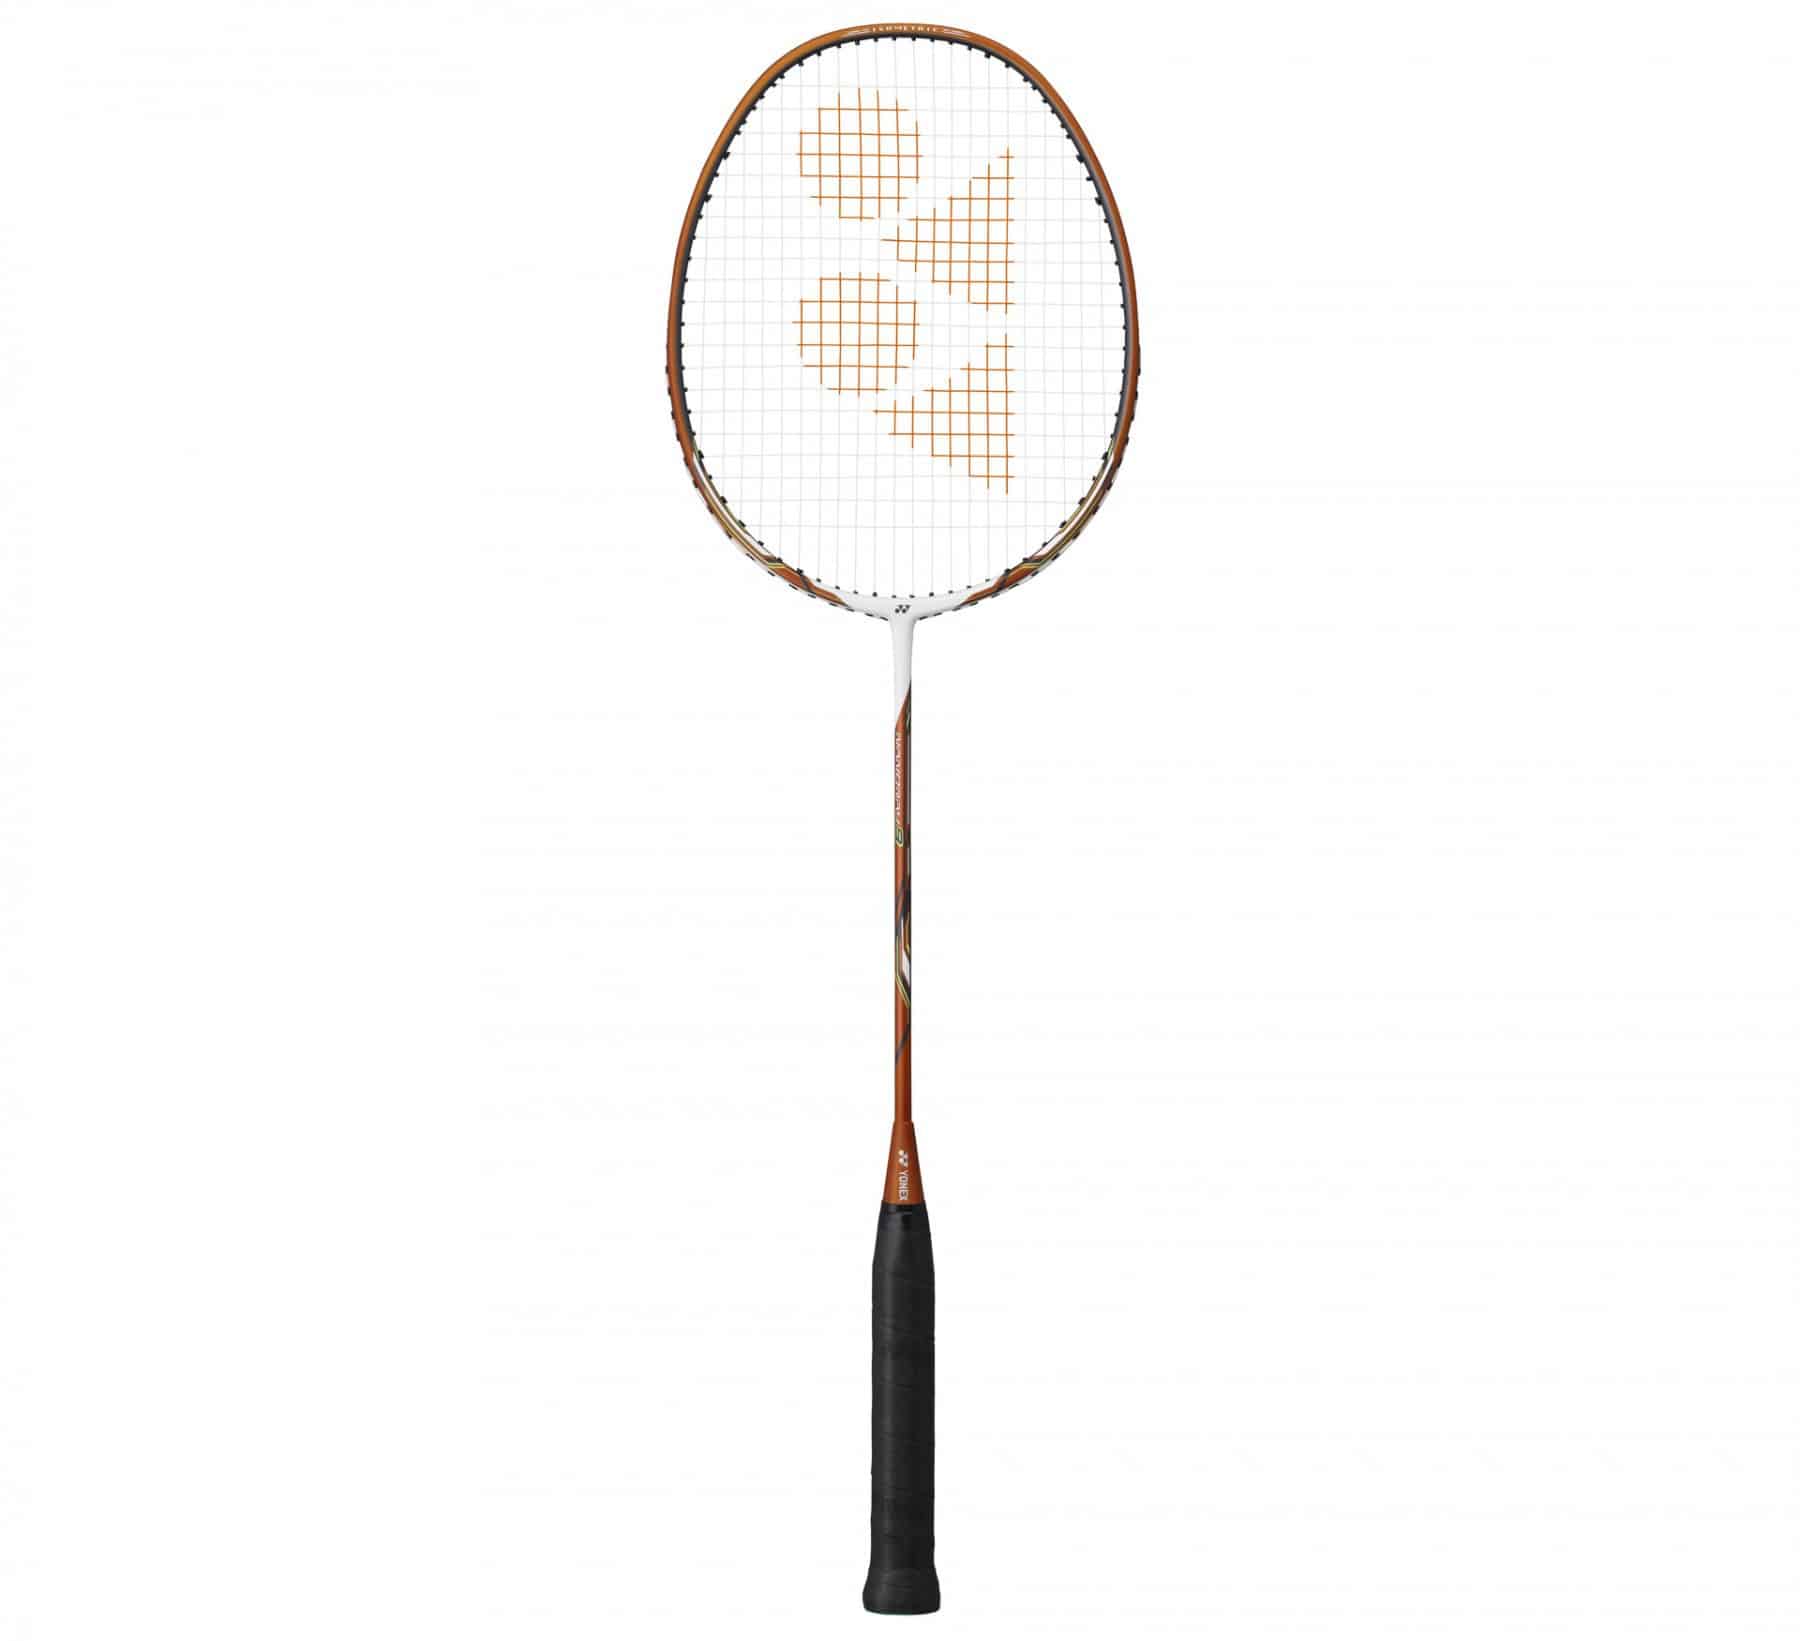 Ny rakitsary badminton Yonex no anisan'ny tsara indrindra